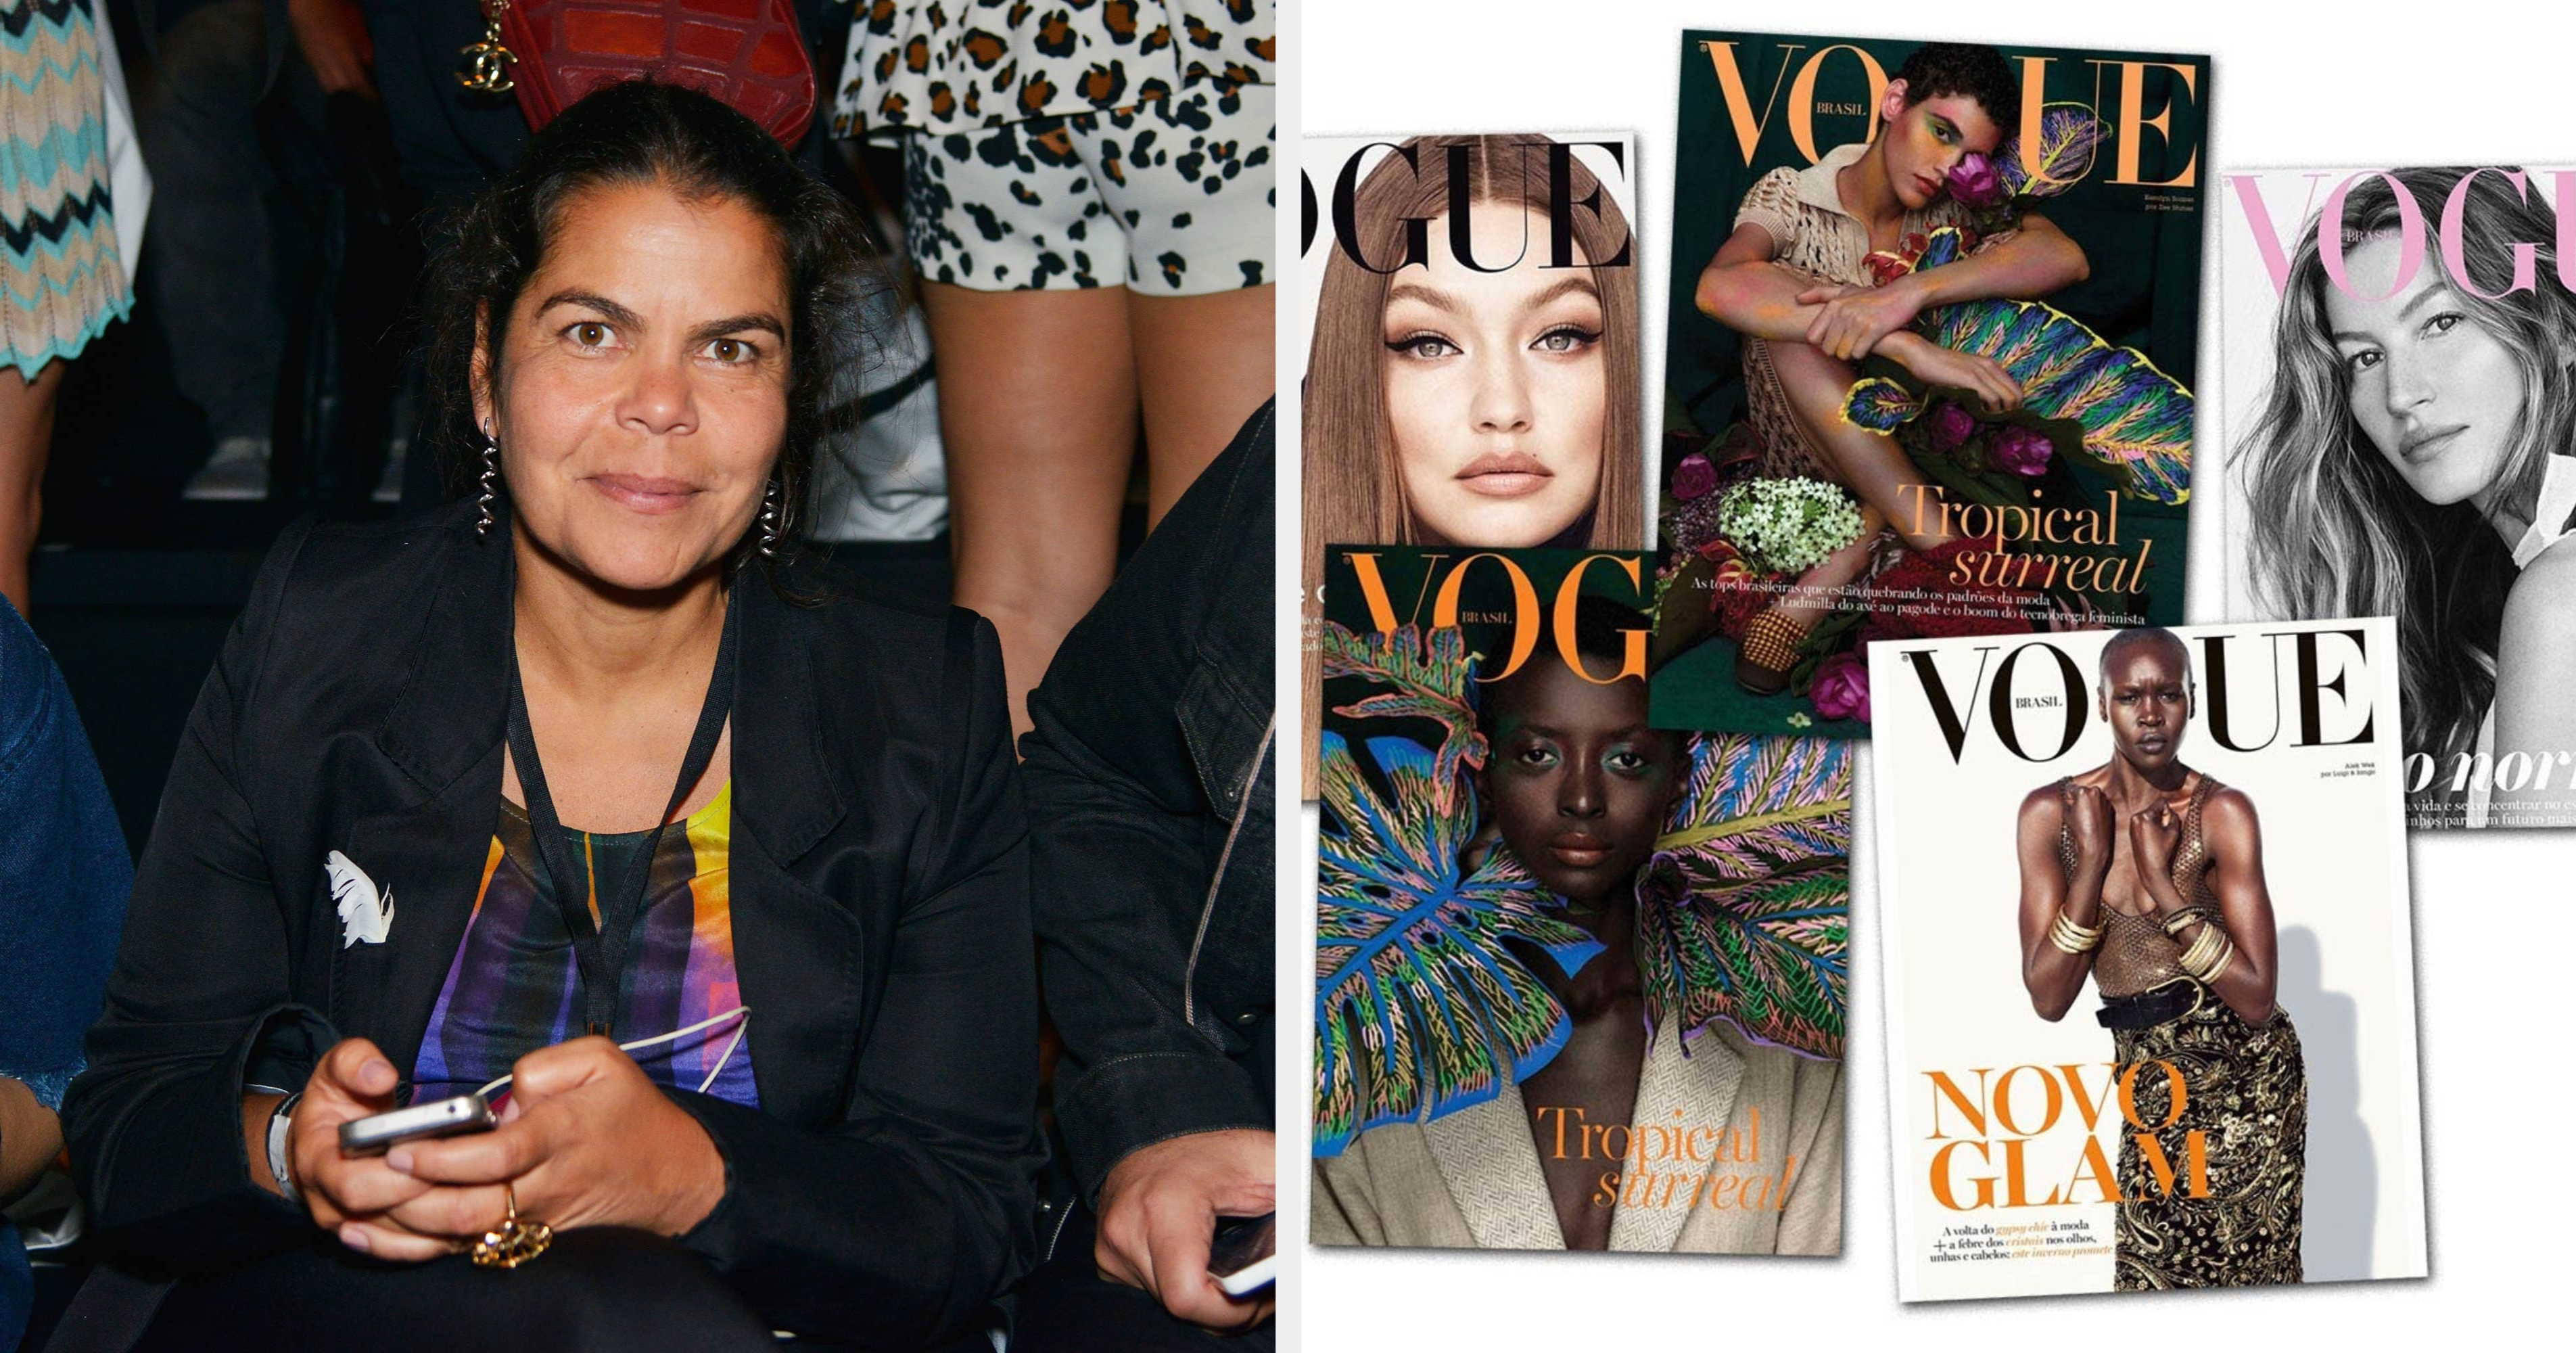 27 ex-funcionários da Vogue Brasil relatam assédio e humilhação na